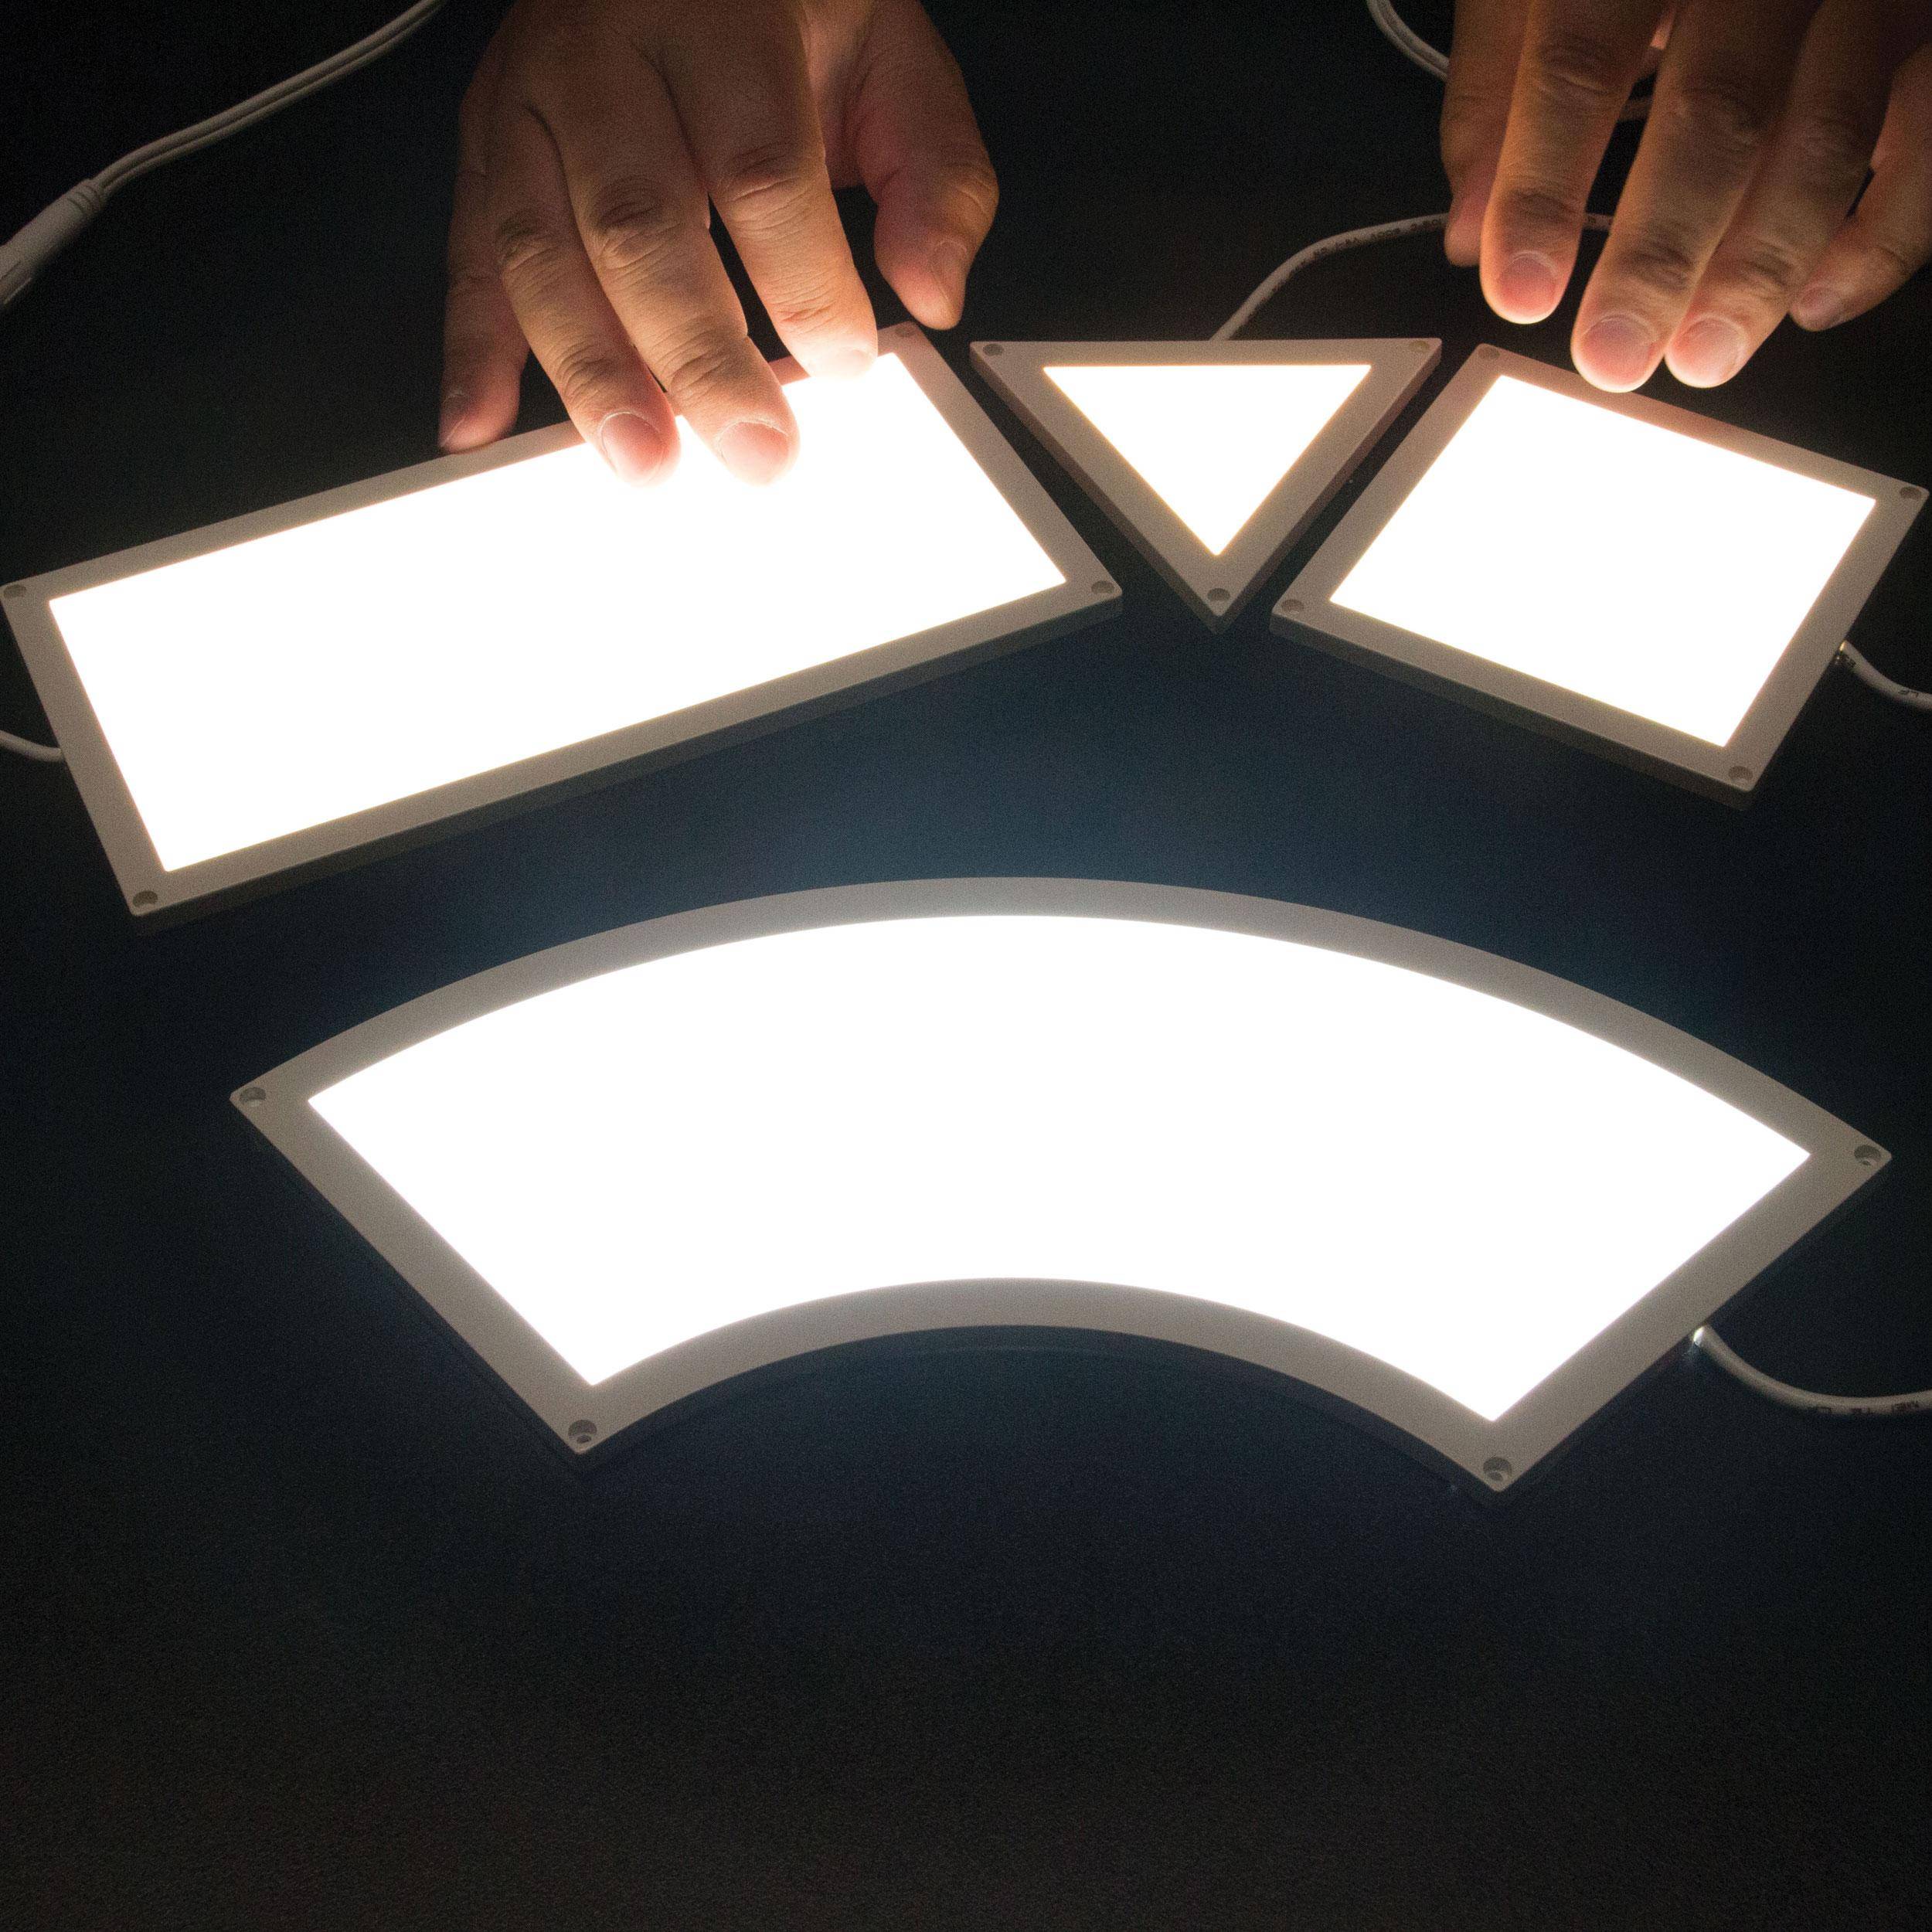 Светодиодная панель своими руками: устройство и изготовление интерактивной световой led-панели